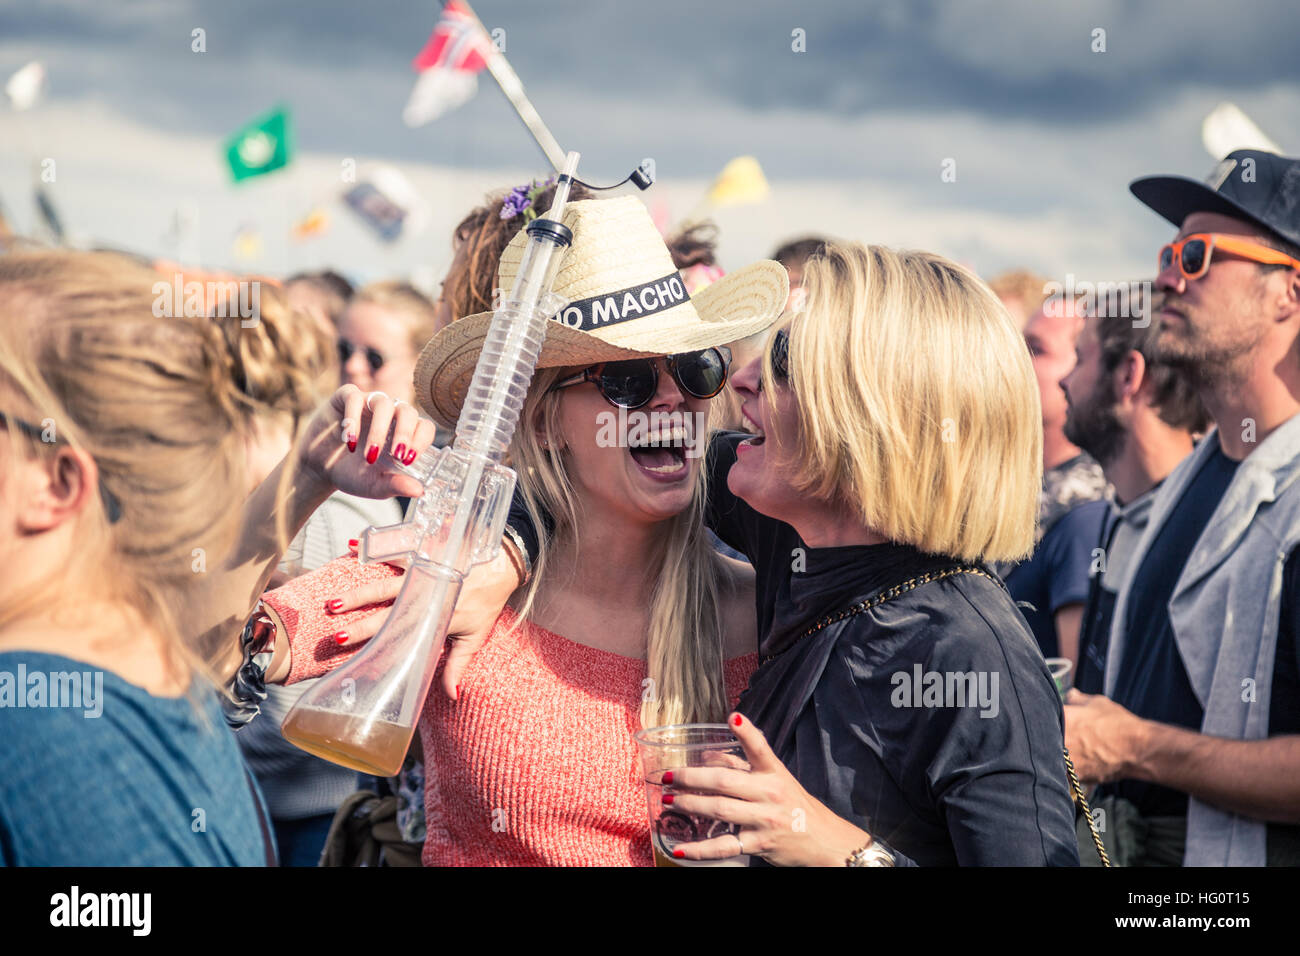 Roskilde, Dinamarca - Junio 29, 2016: la gente celebrando y disfrutando de un concierto en el Festival de Roskilde Foto de stock